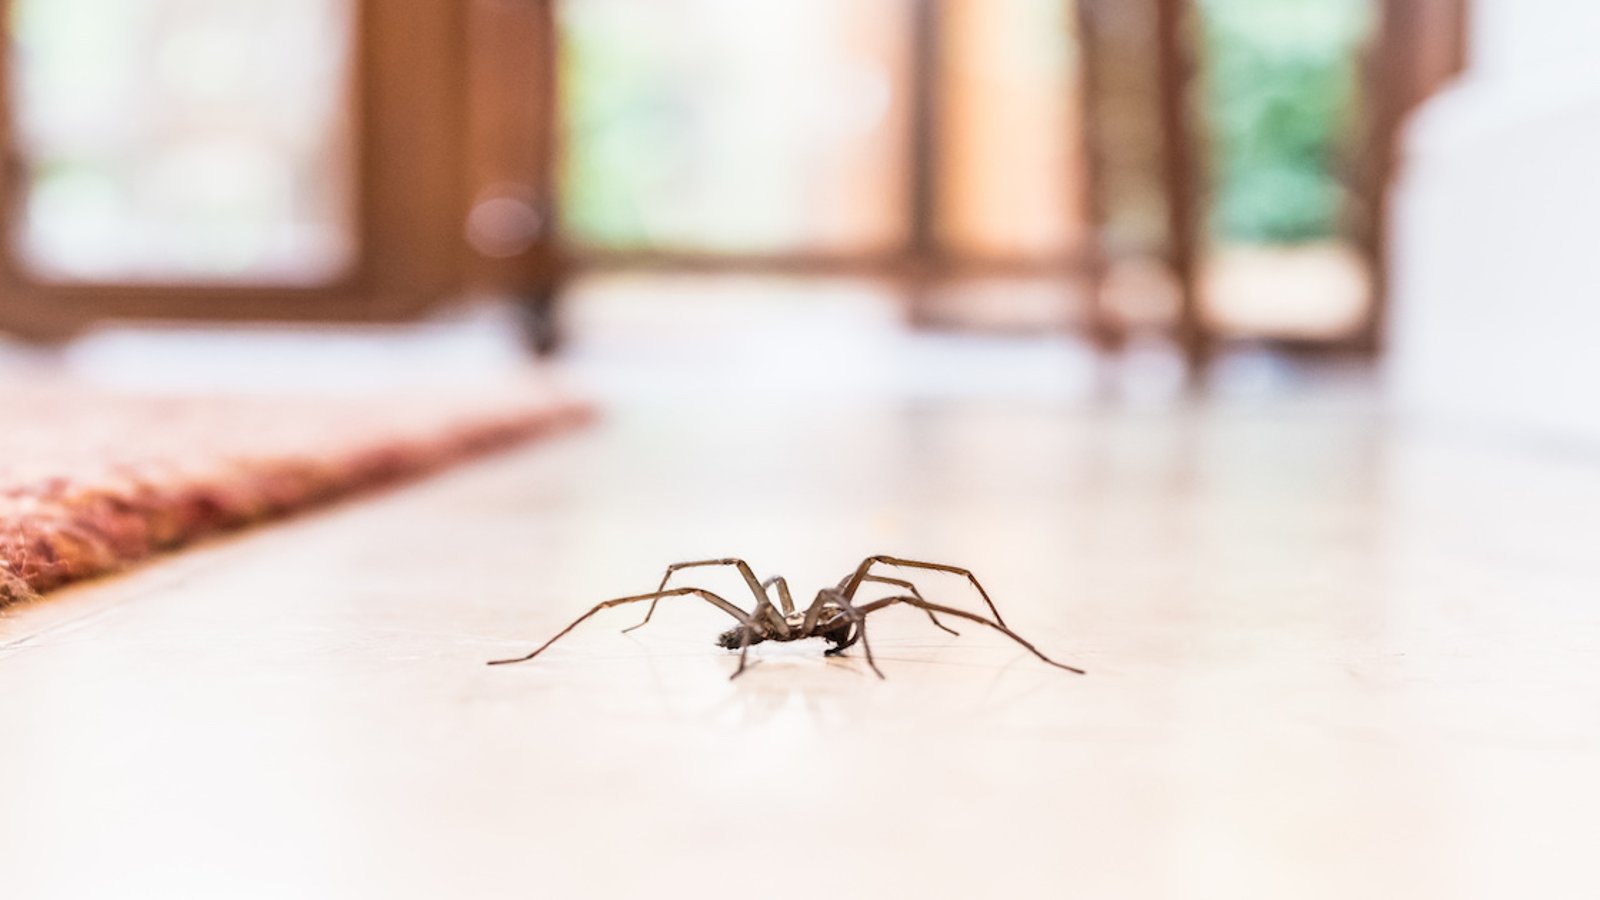 6 astuces qui éloigneront les araignées de votre cuisine, salle de bain et chambre à coucher